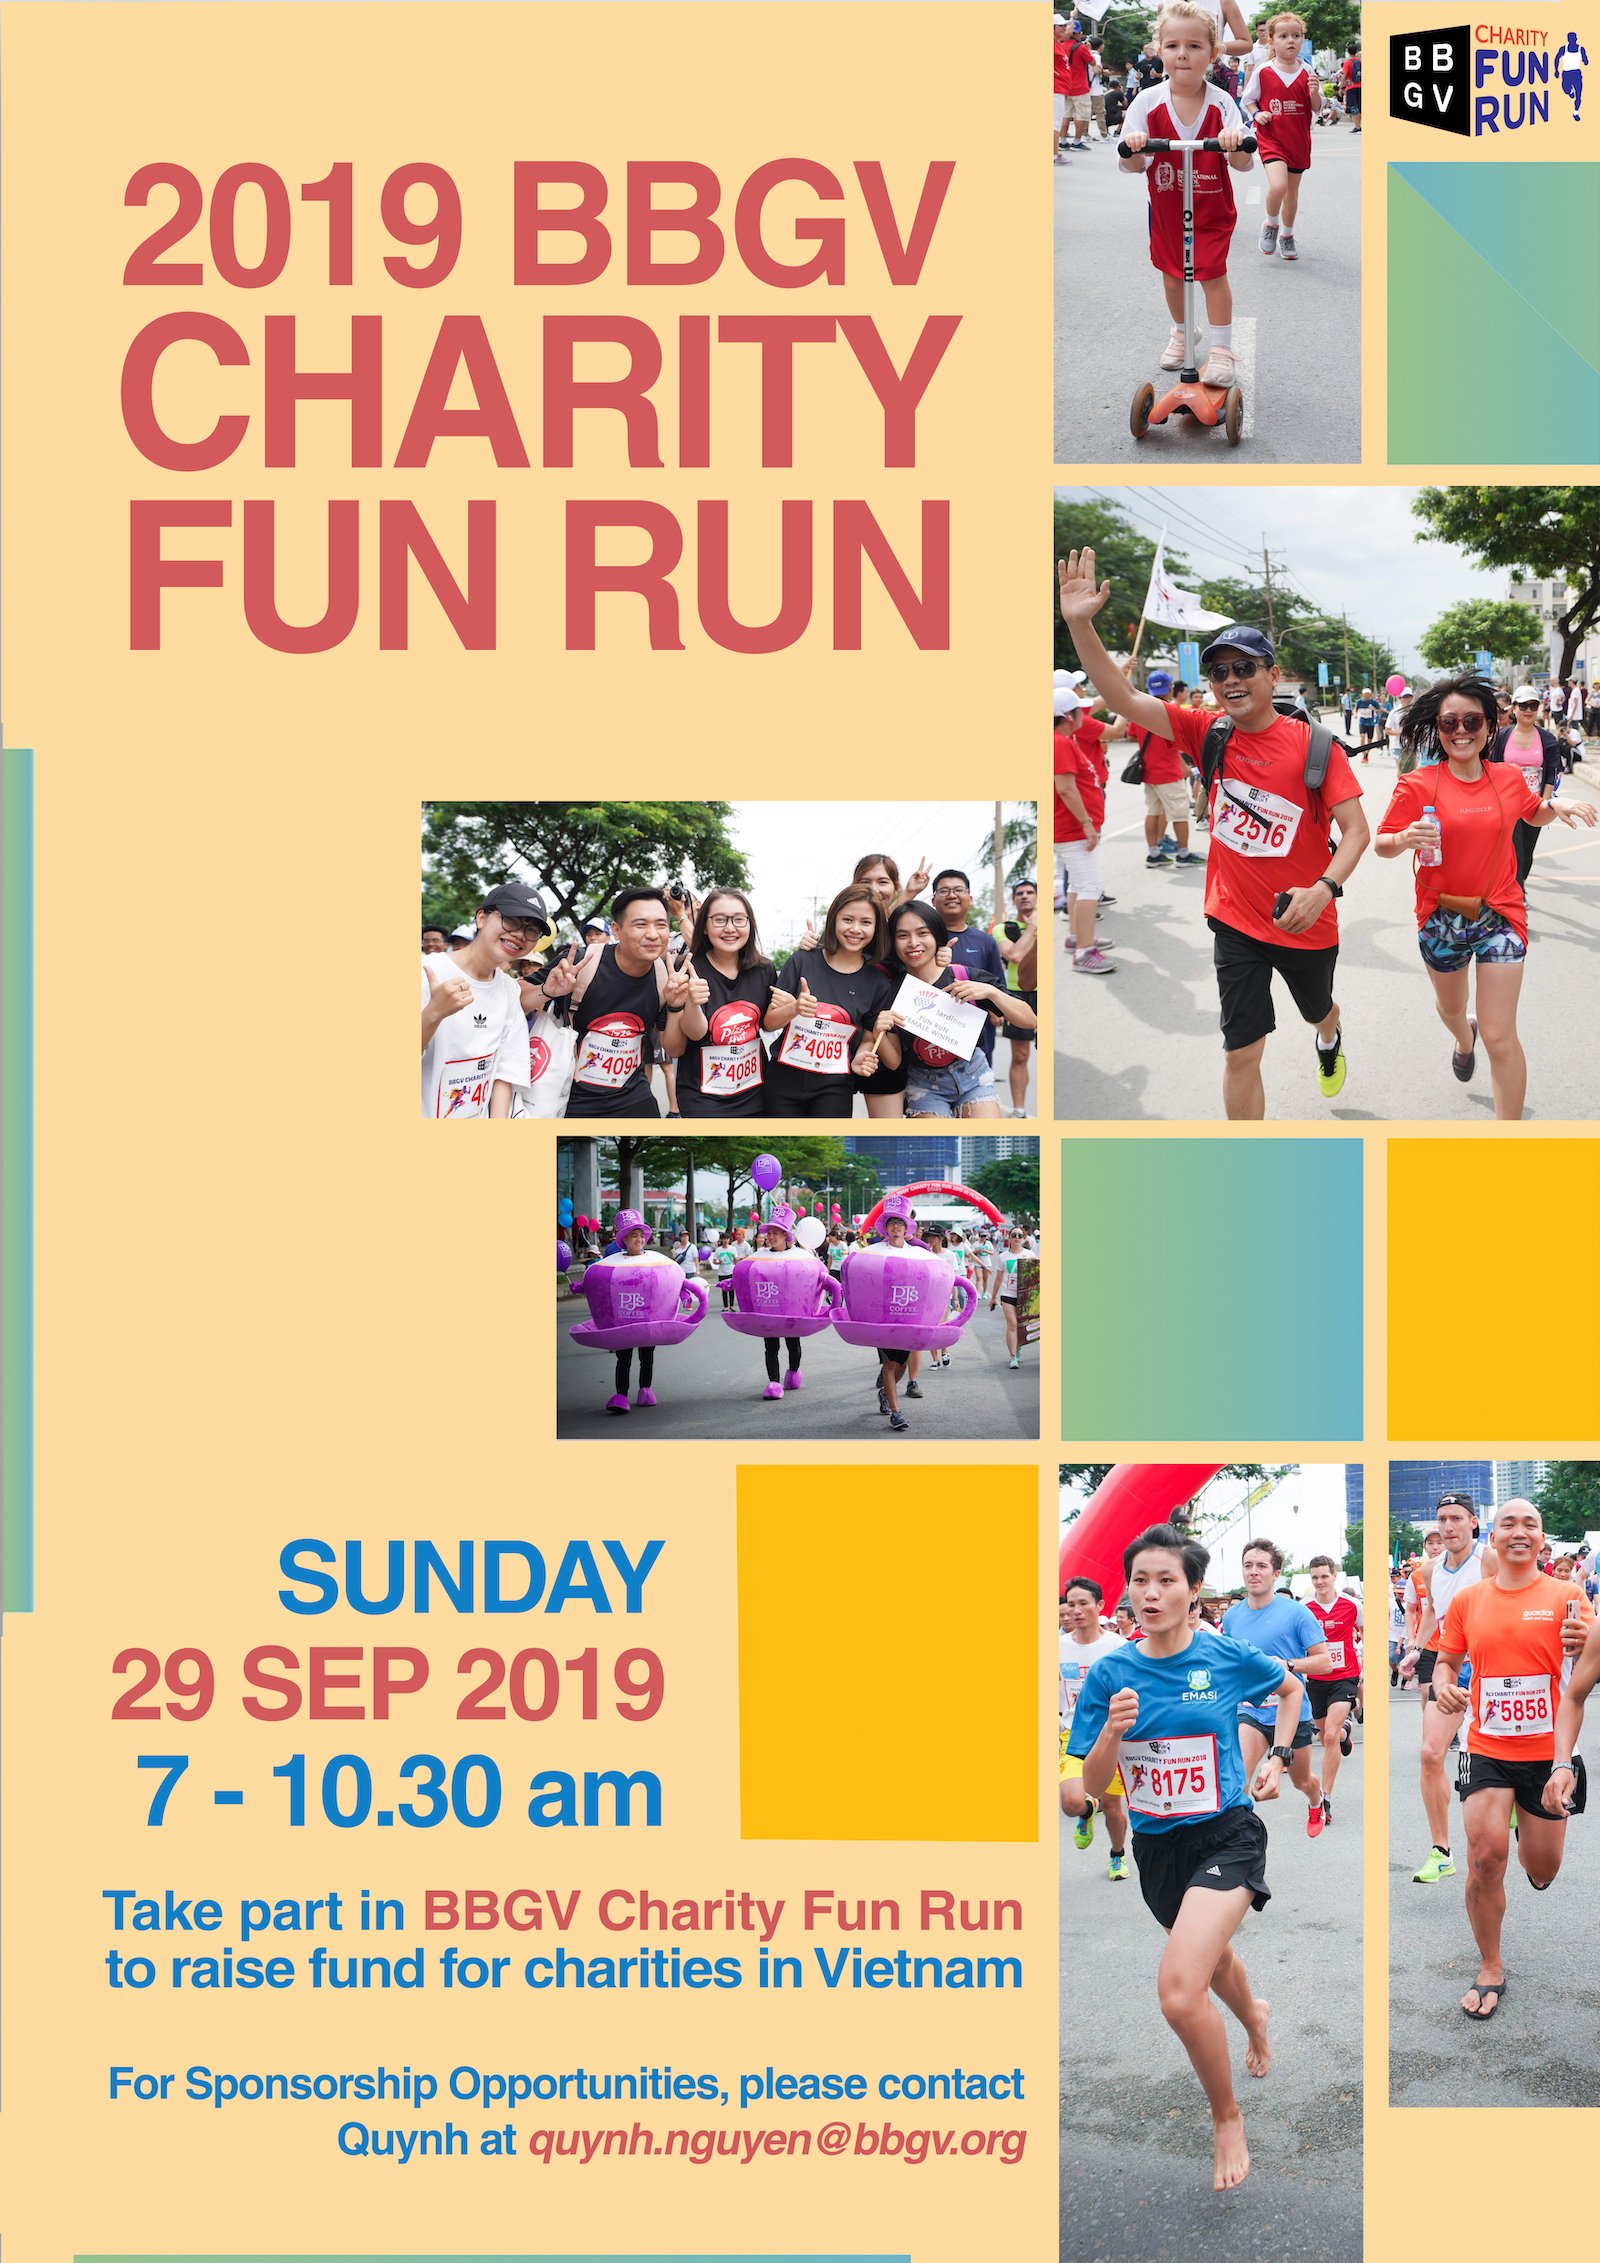 BBGV 19th Fun Run for Charity 2019 - bbgv fun run 2019